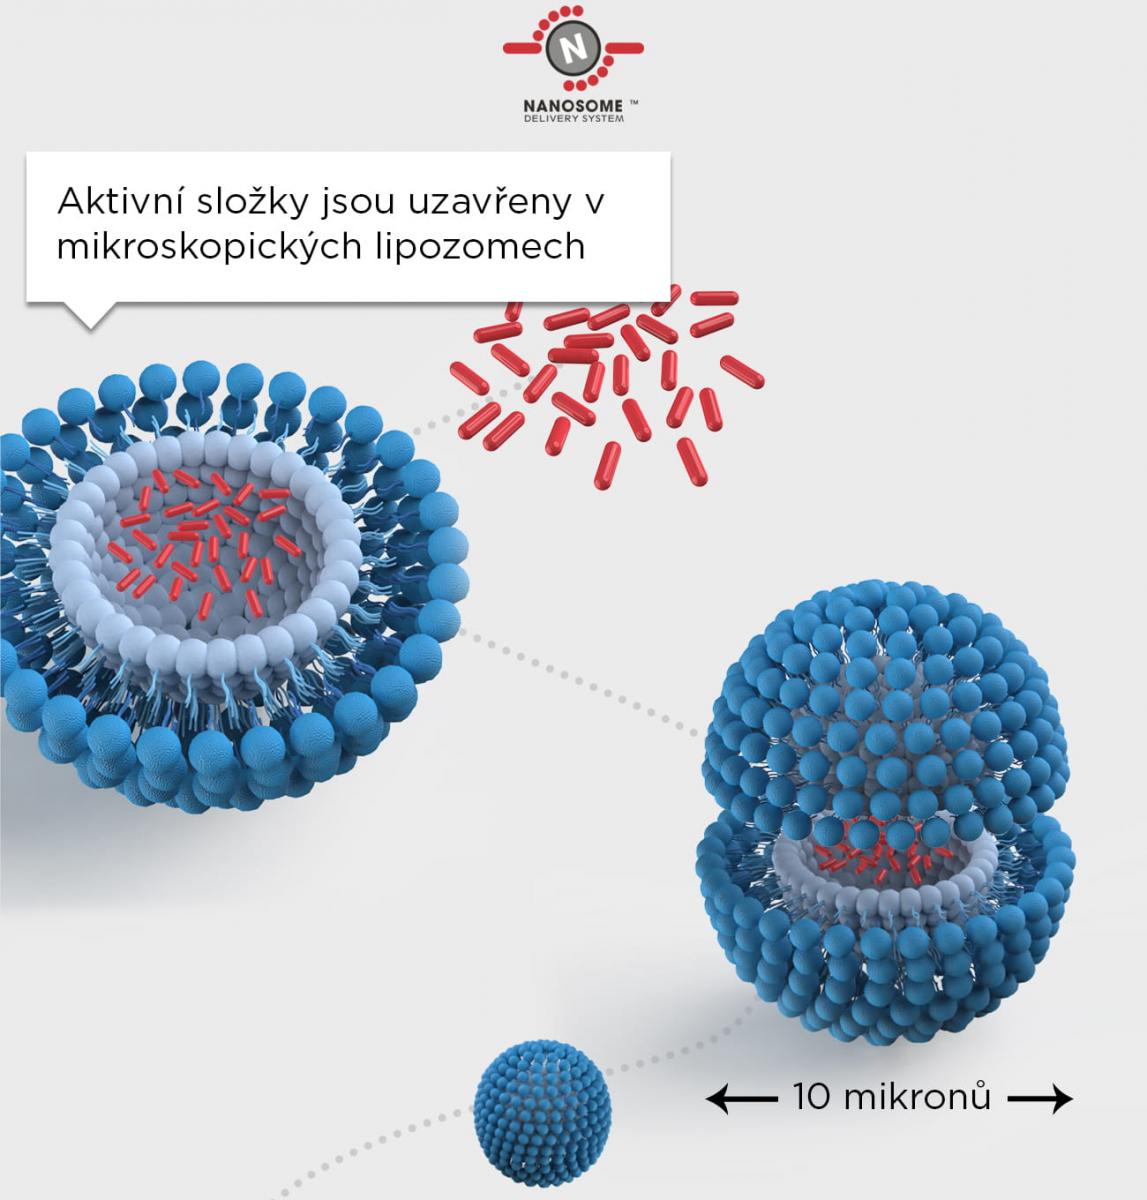 Tchnológie nanosomů pro lepší dodání výživných látek do pokožky - aktivní složky jsou uzavřeny v mikroskopických lipozomech.